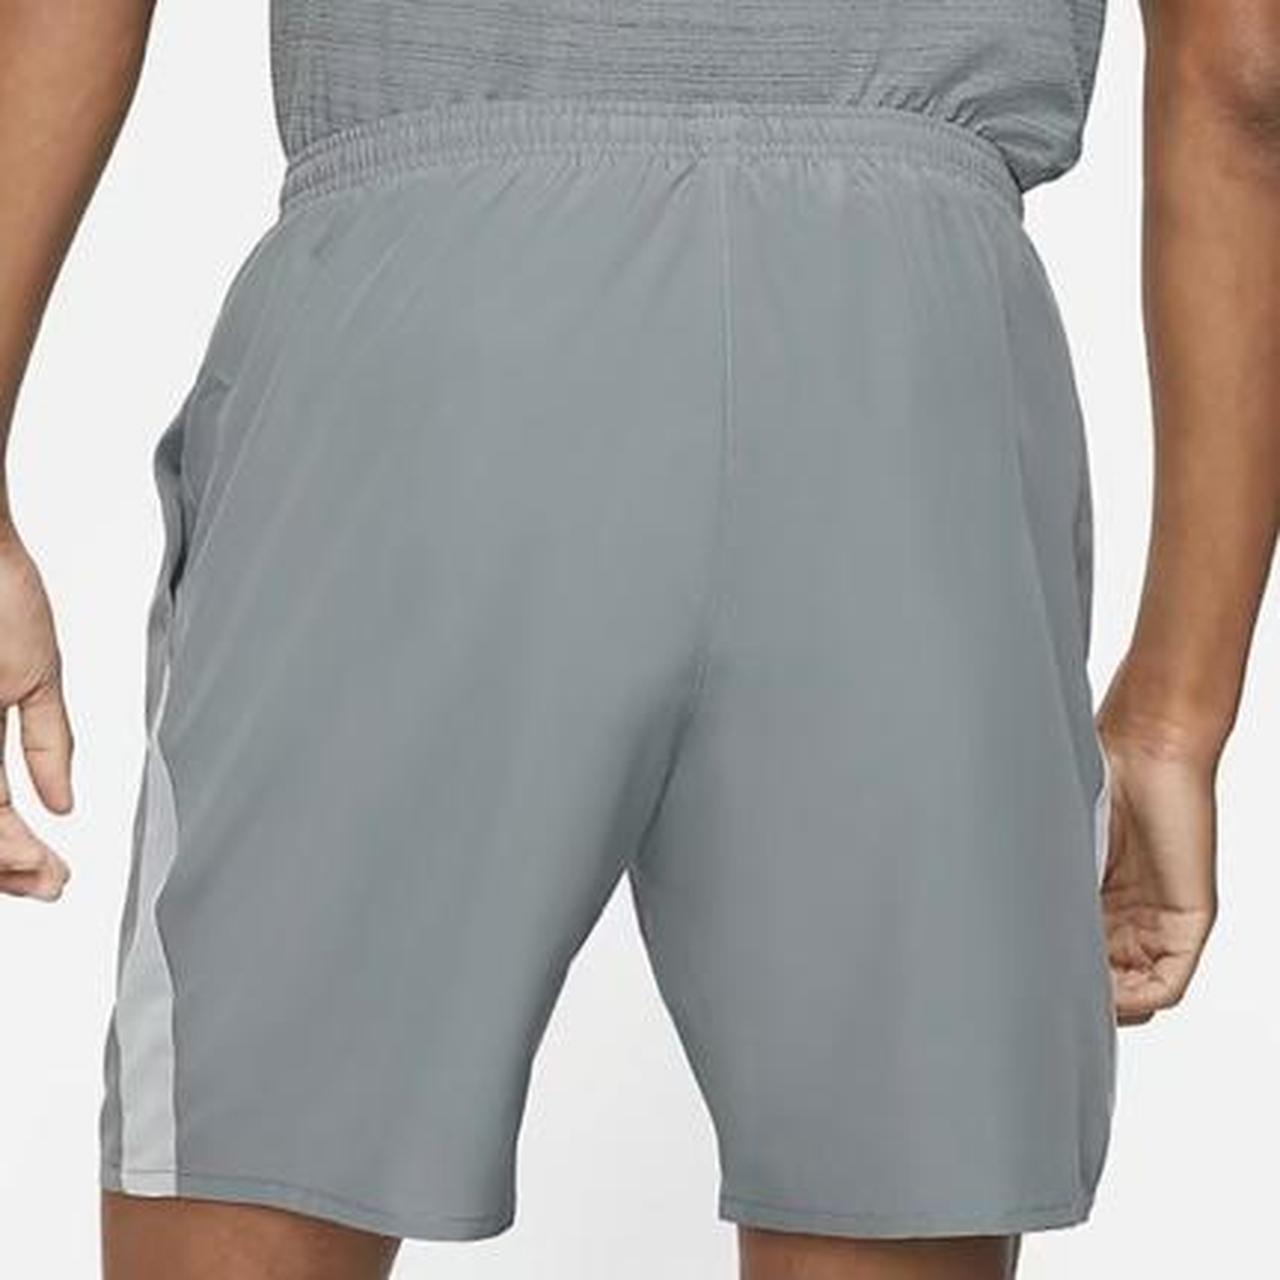 Mens grey running shorts Standard Fit, 18cm Running... - Depop